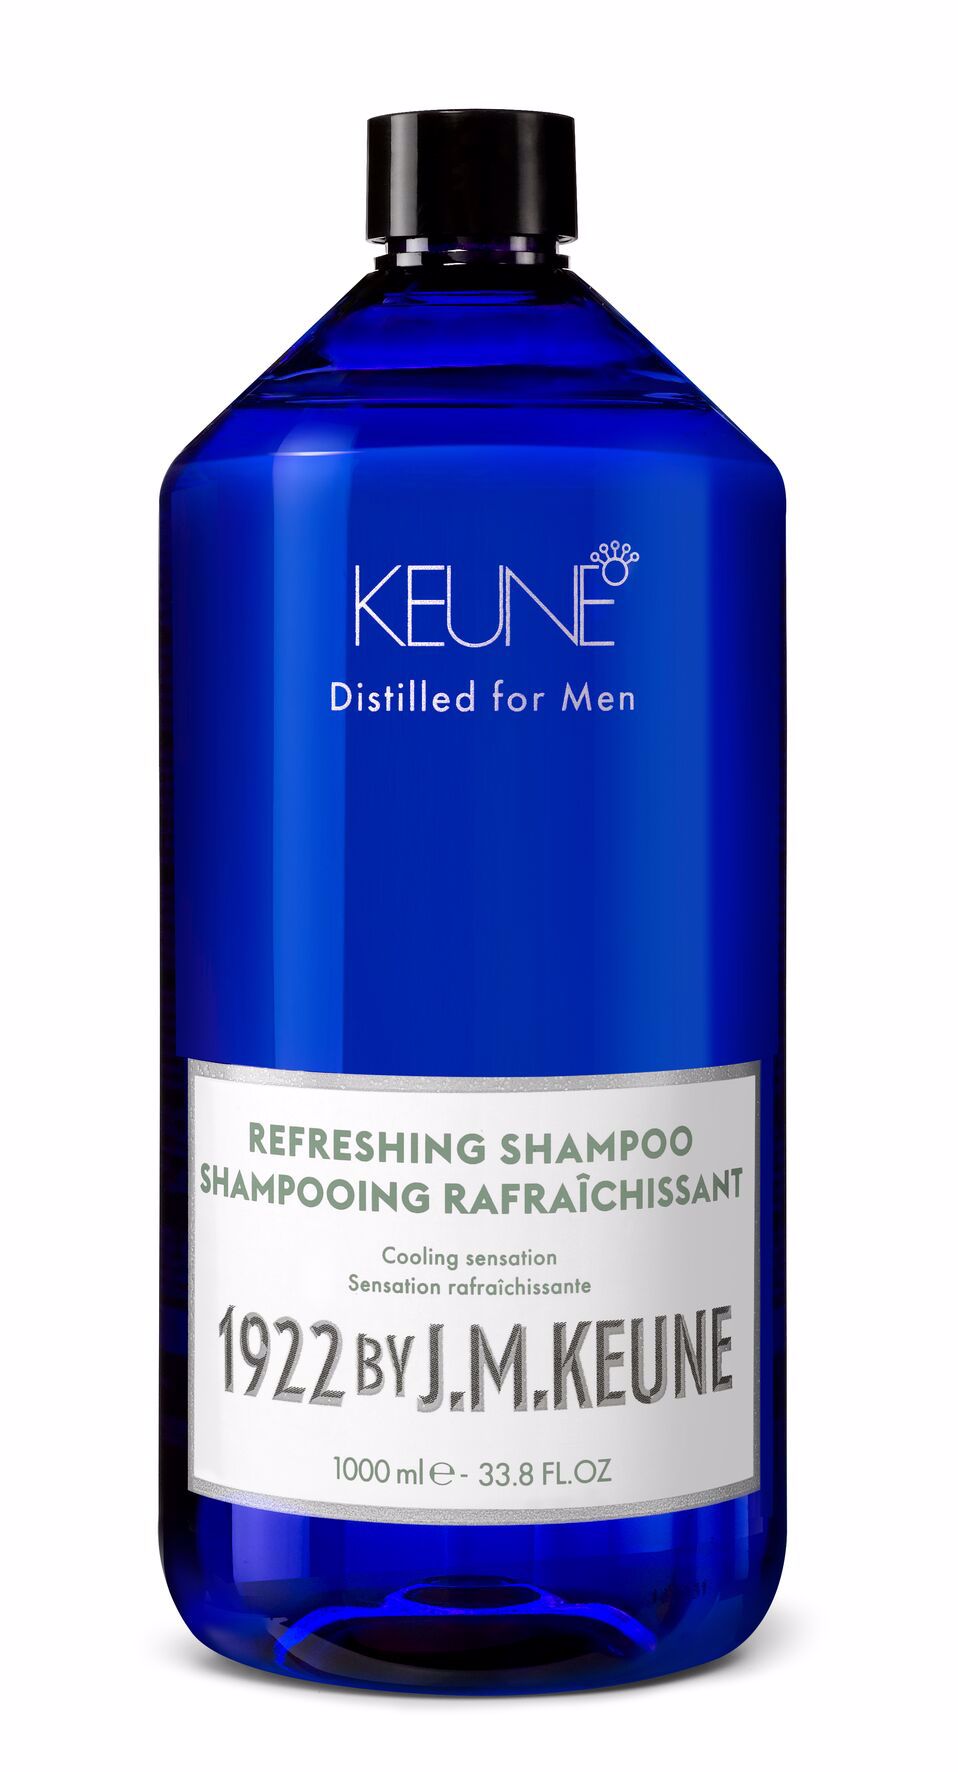 Entdecke das Refreshing Shampoo, perfekt für alle Haartypen. Angereichert mit Kreatin stärkt es das Haar und belebt die Kopfhaut. Jetzt auf keune.ch erhältlich.